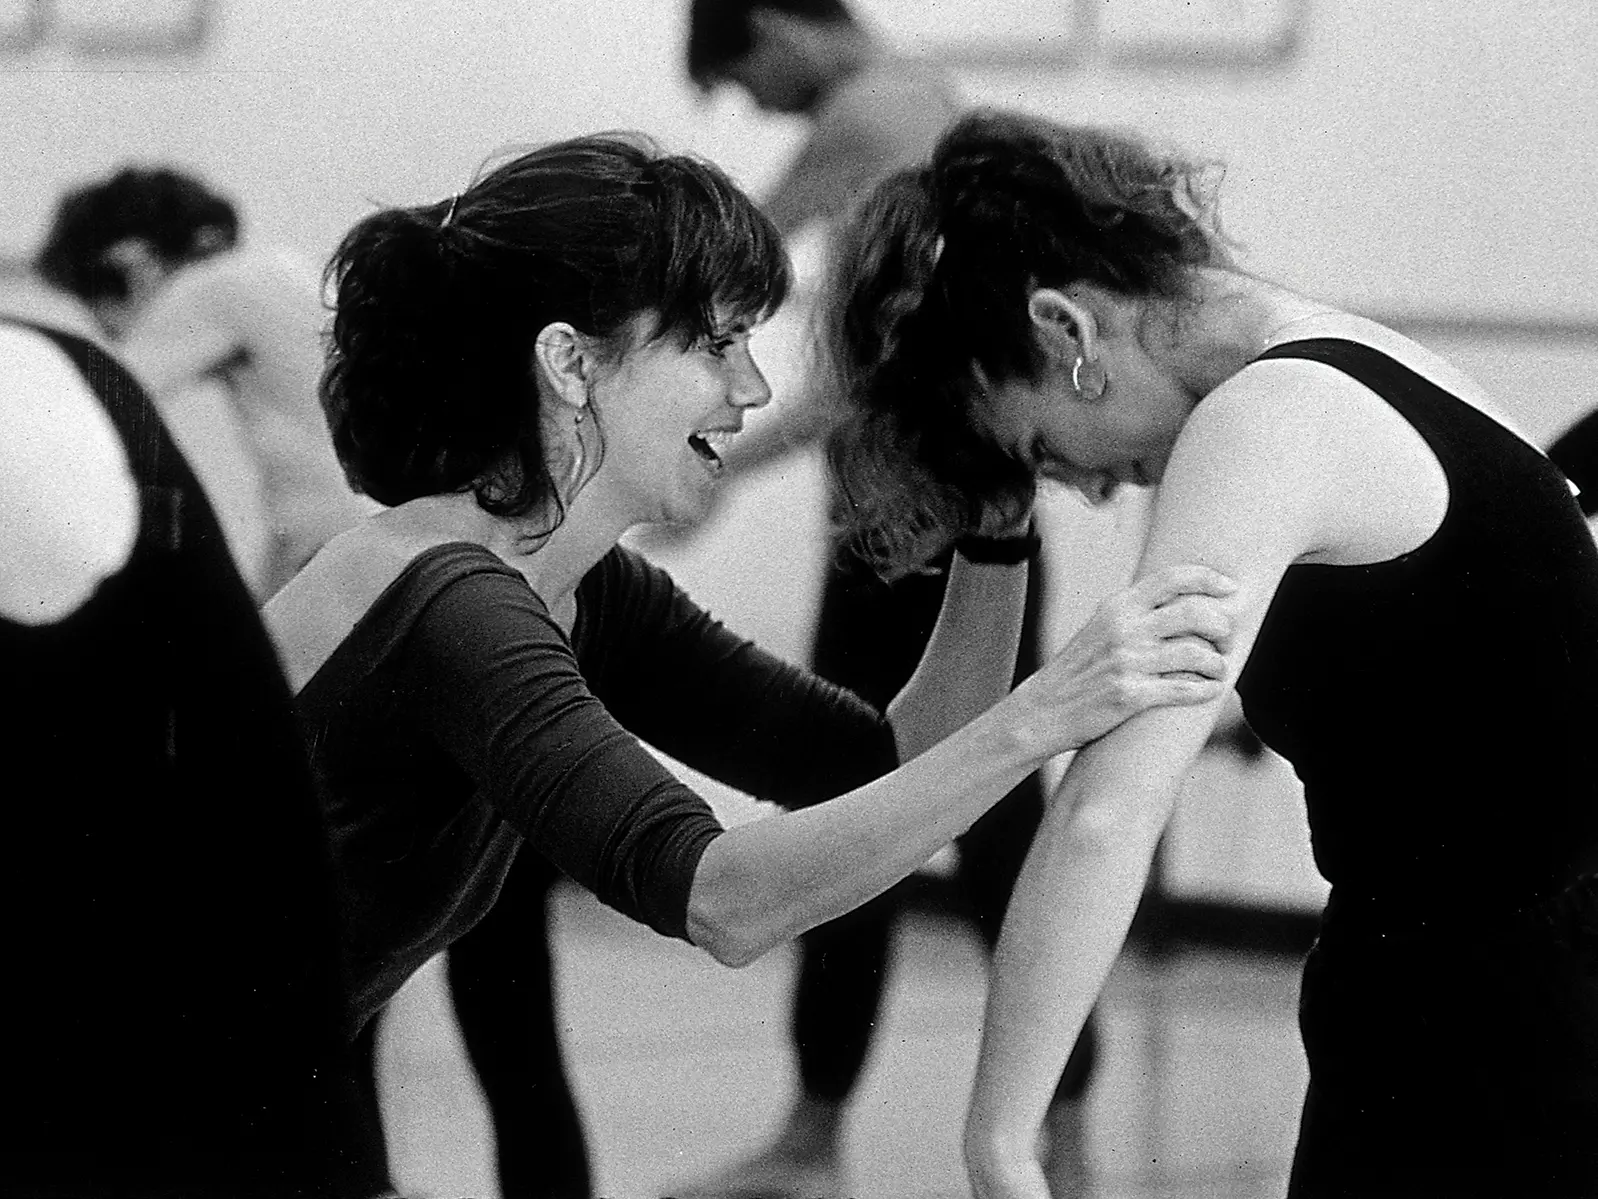 Karen Bell encouraging one of her dance students